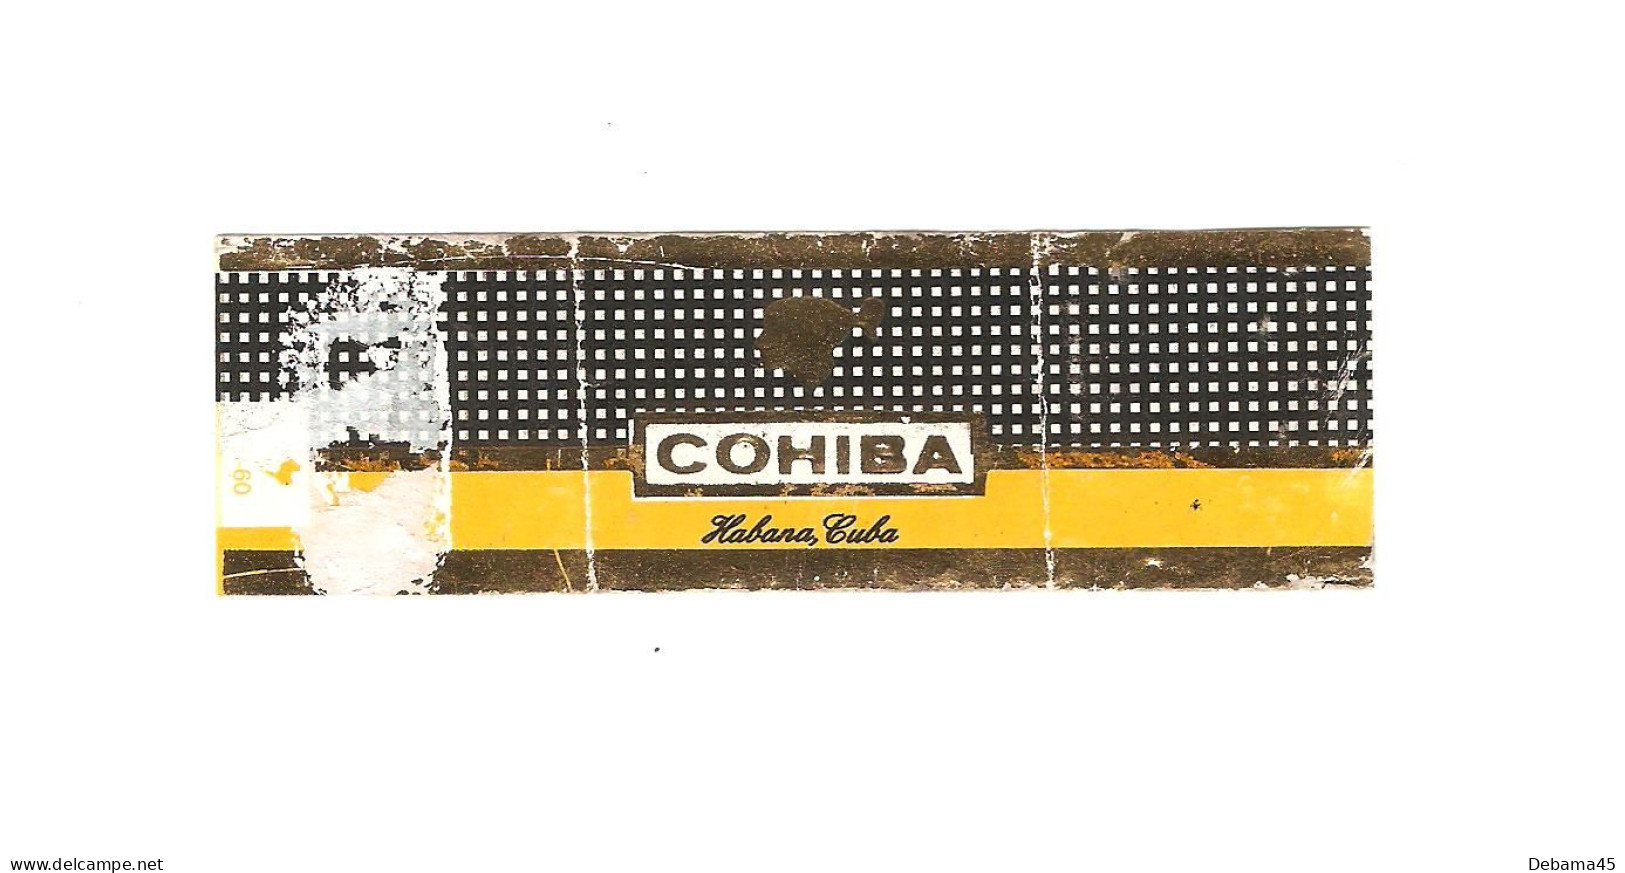 620/ Bague De Cigare : CUBA : Cohiba : Habana Cuba - Bauchbinden (Zigarrenringe)